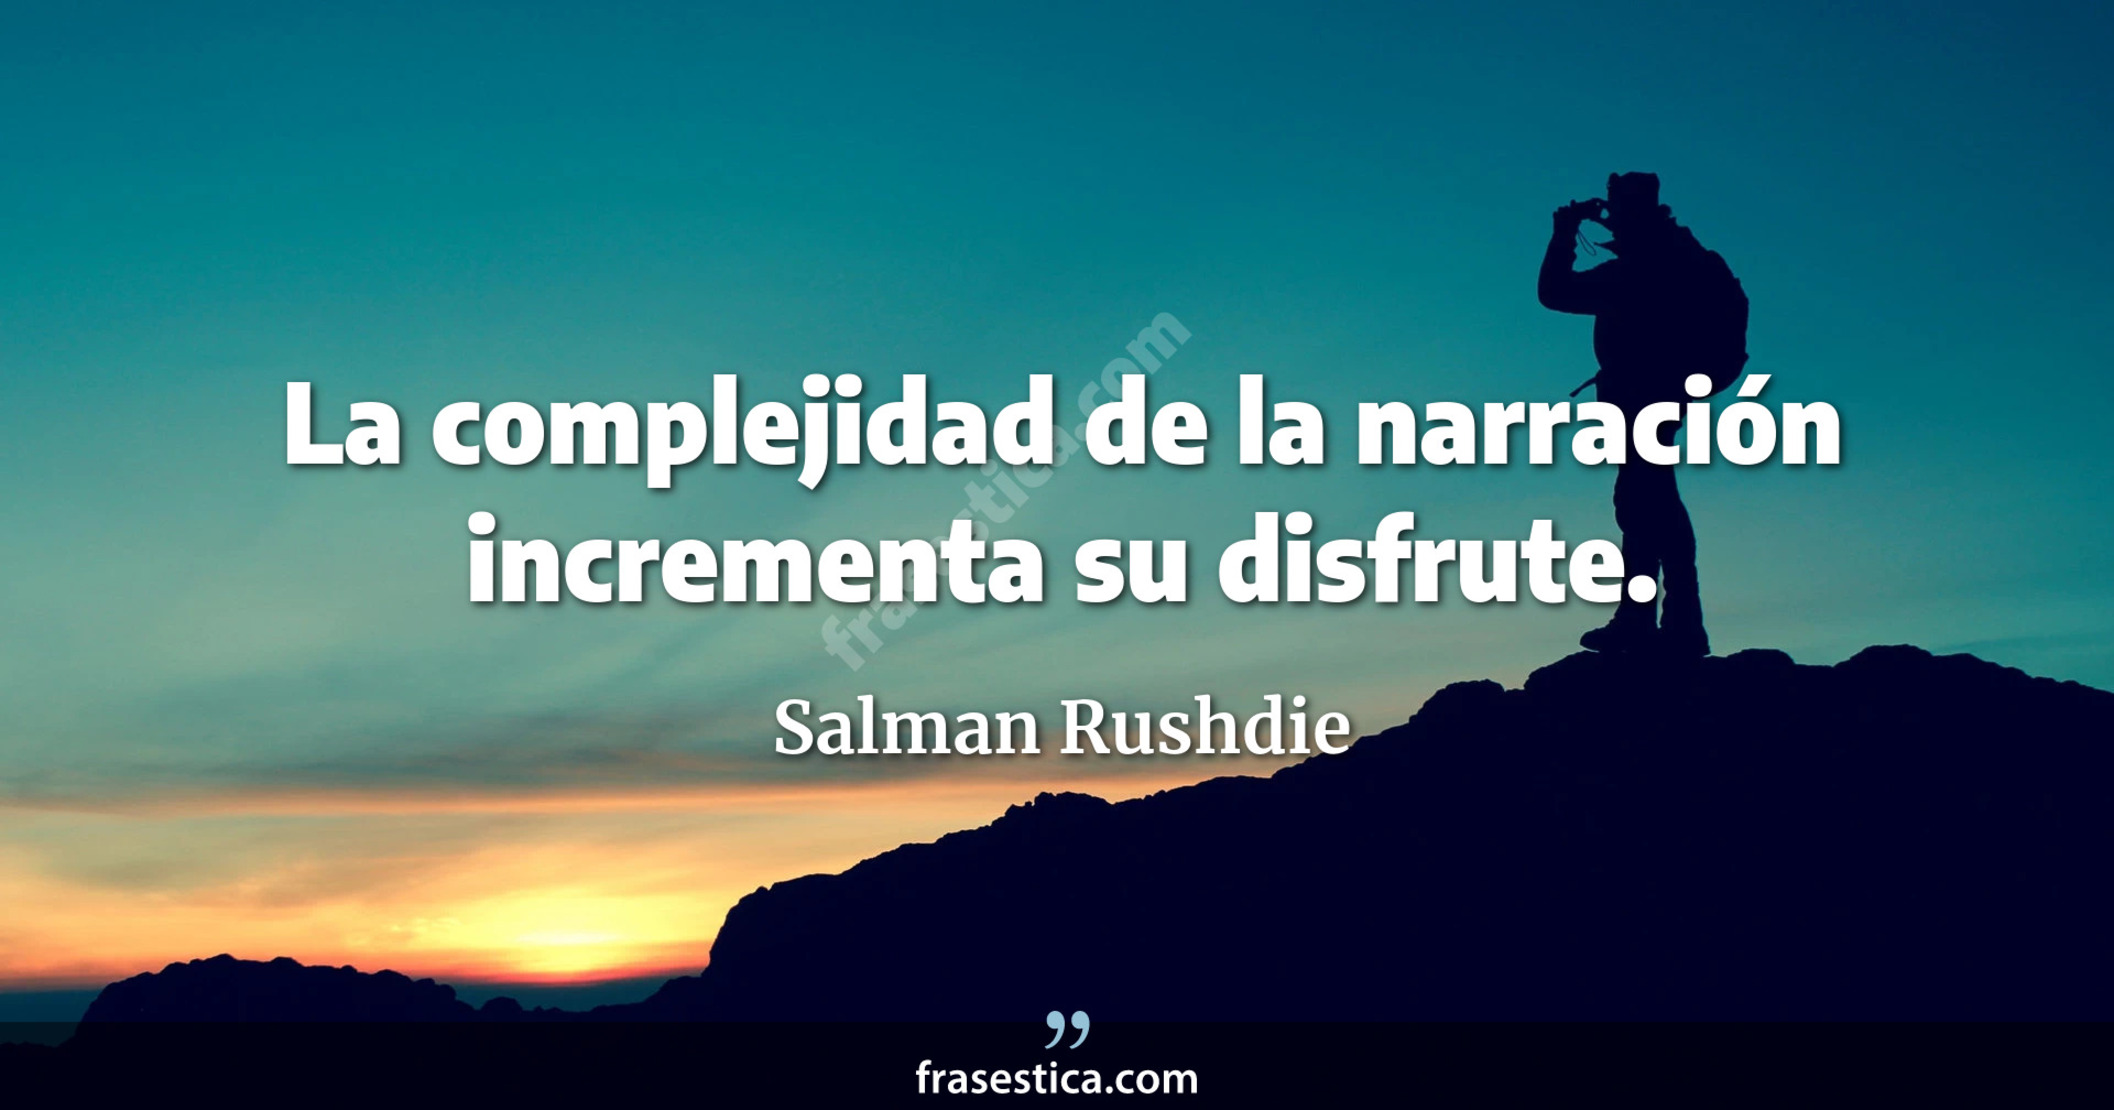 La complejidad de la narración incrementa su disfrute. - Salman Rushdie